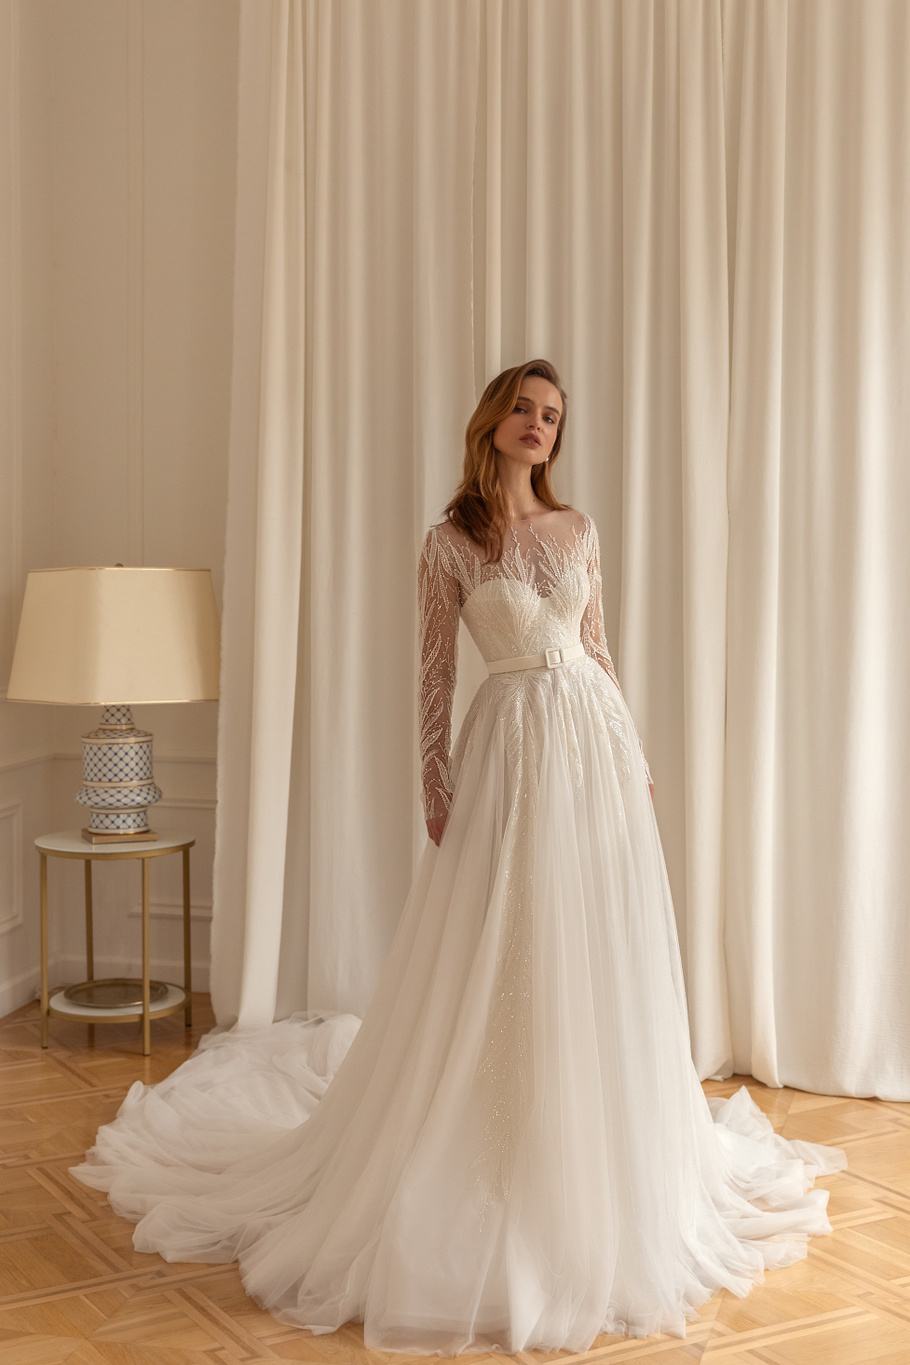 Купить свадебное платье «Сабрина» Евы Лендел из коллекции 2022 в «Мэри Трюфель»